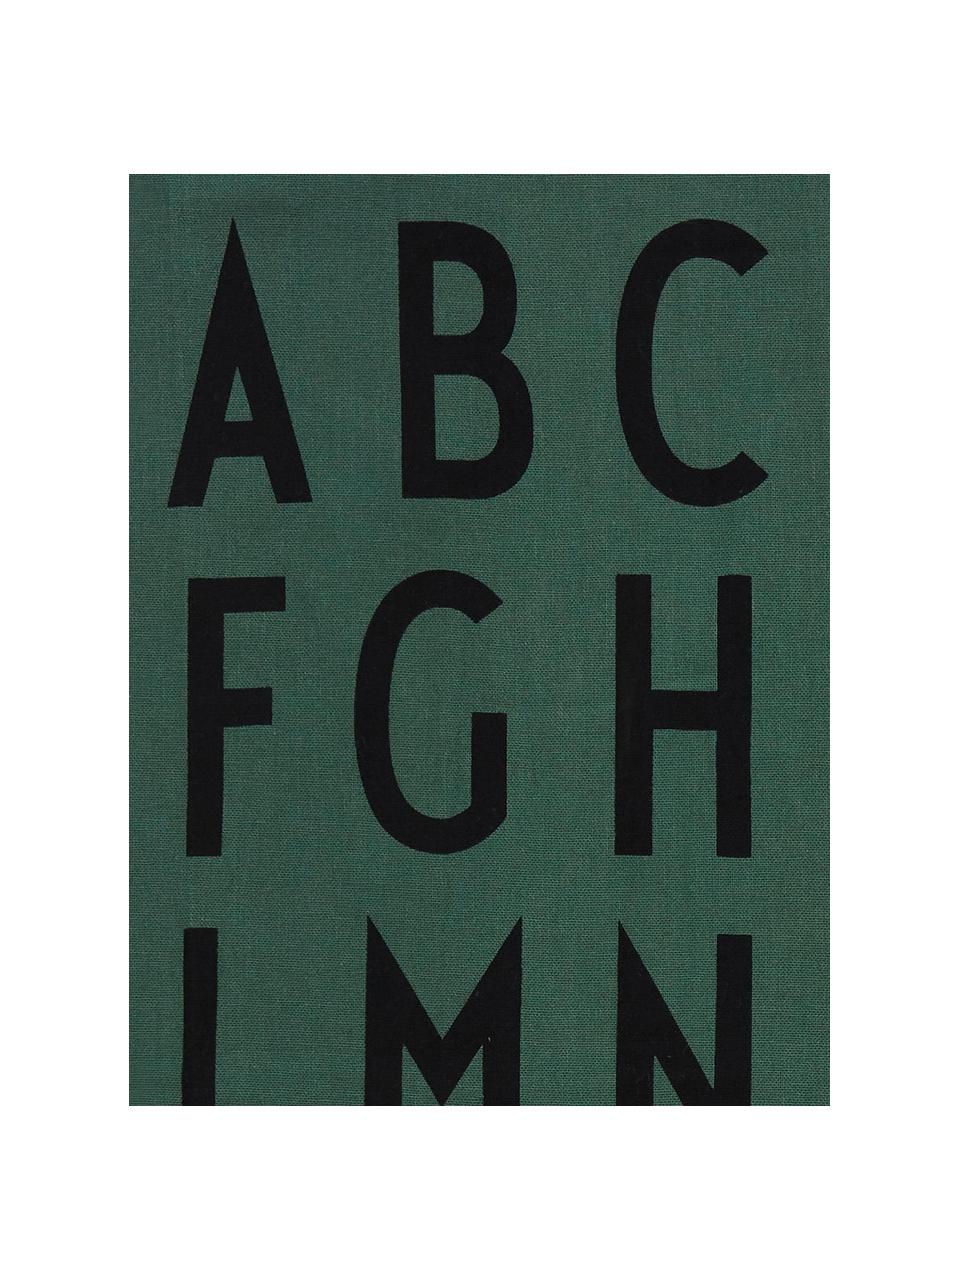 Geschirrtücher Classic in Grün mit Designletters, 2 Stück, Baumwolle, Grün, Schwarz, 40 x 60 cm